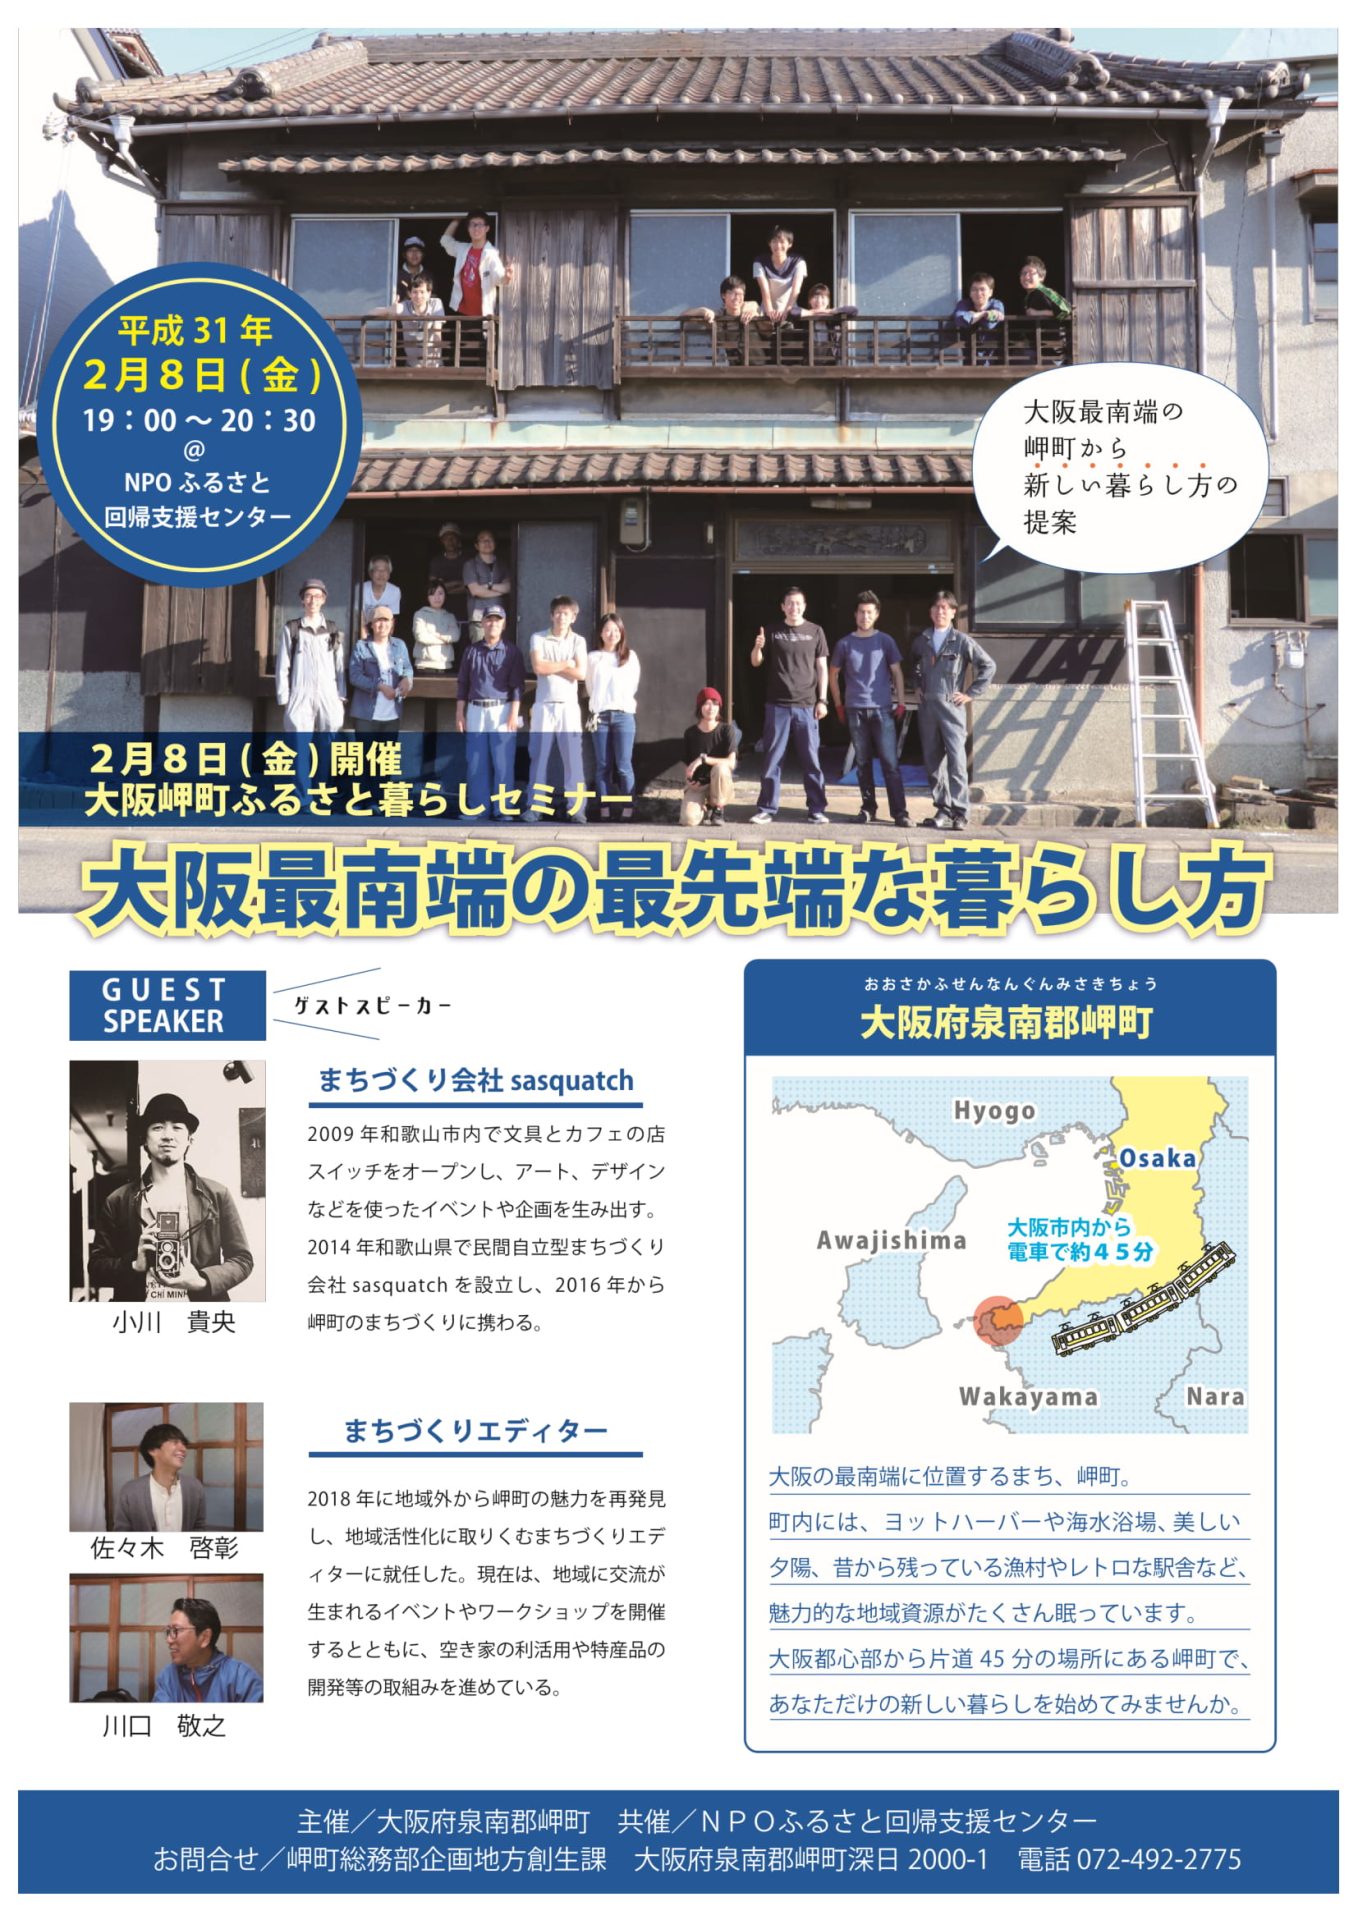 大阪最南端の最先端な暮らし方 | 移住関連イベント情報